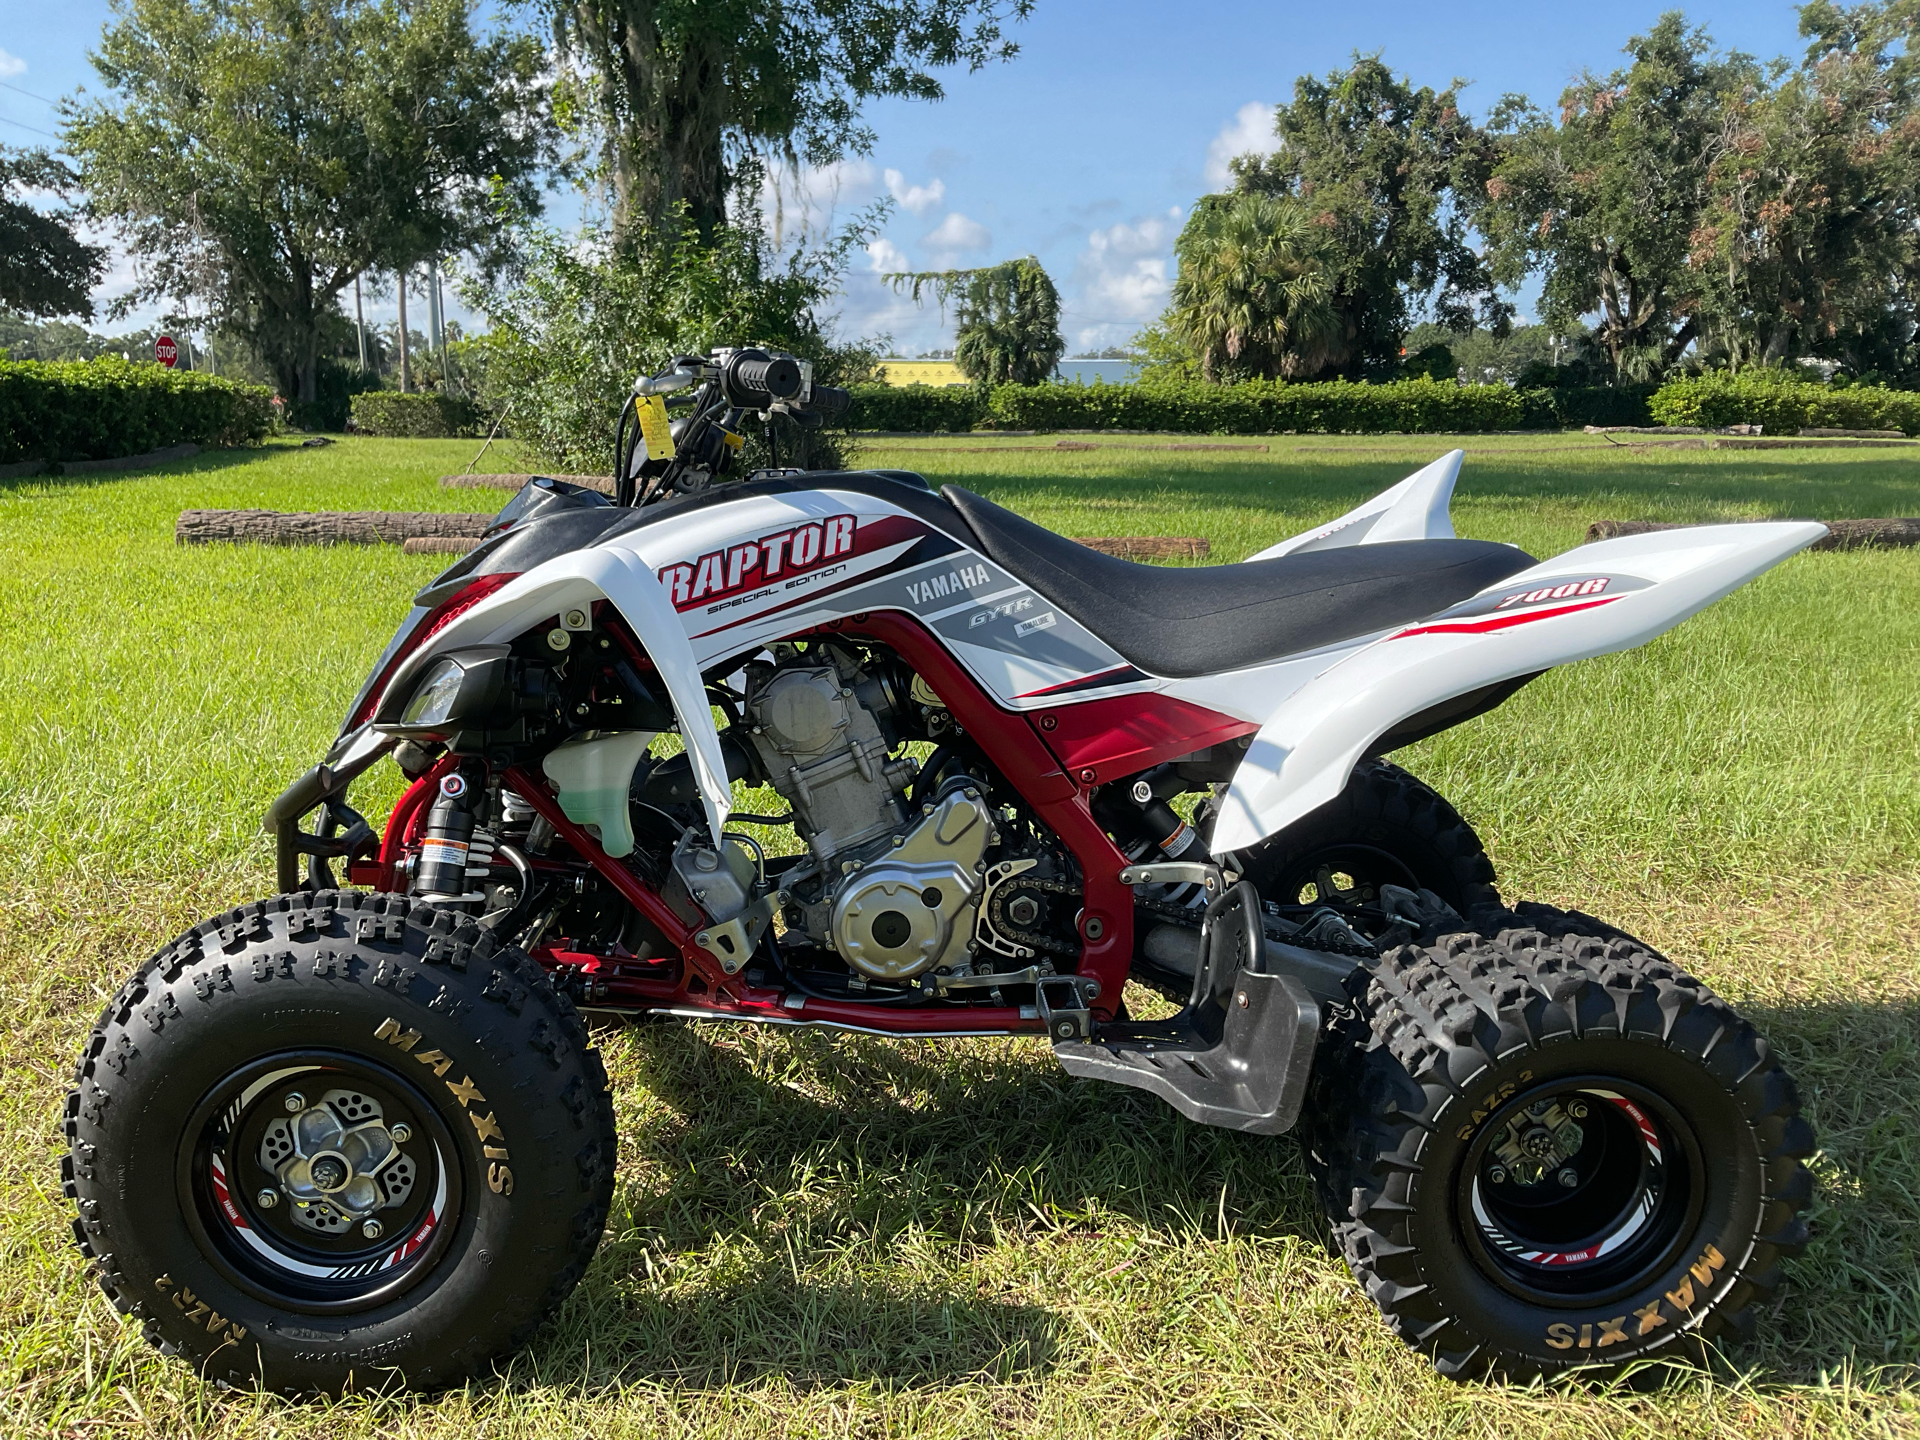 2018 Yamaha Raptor 700R SE in Sanford, Florida - Photo 1